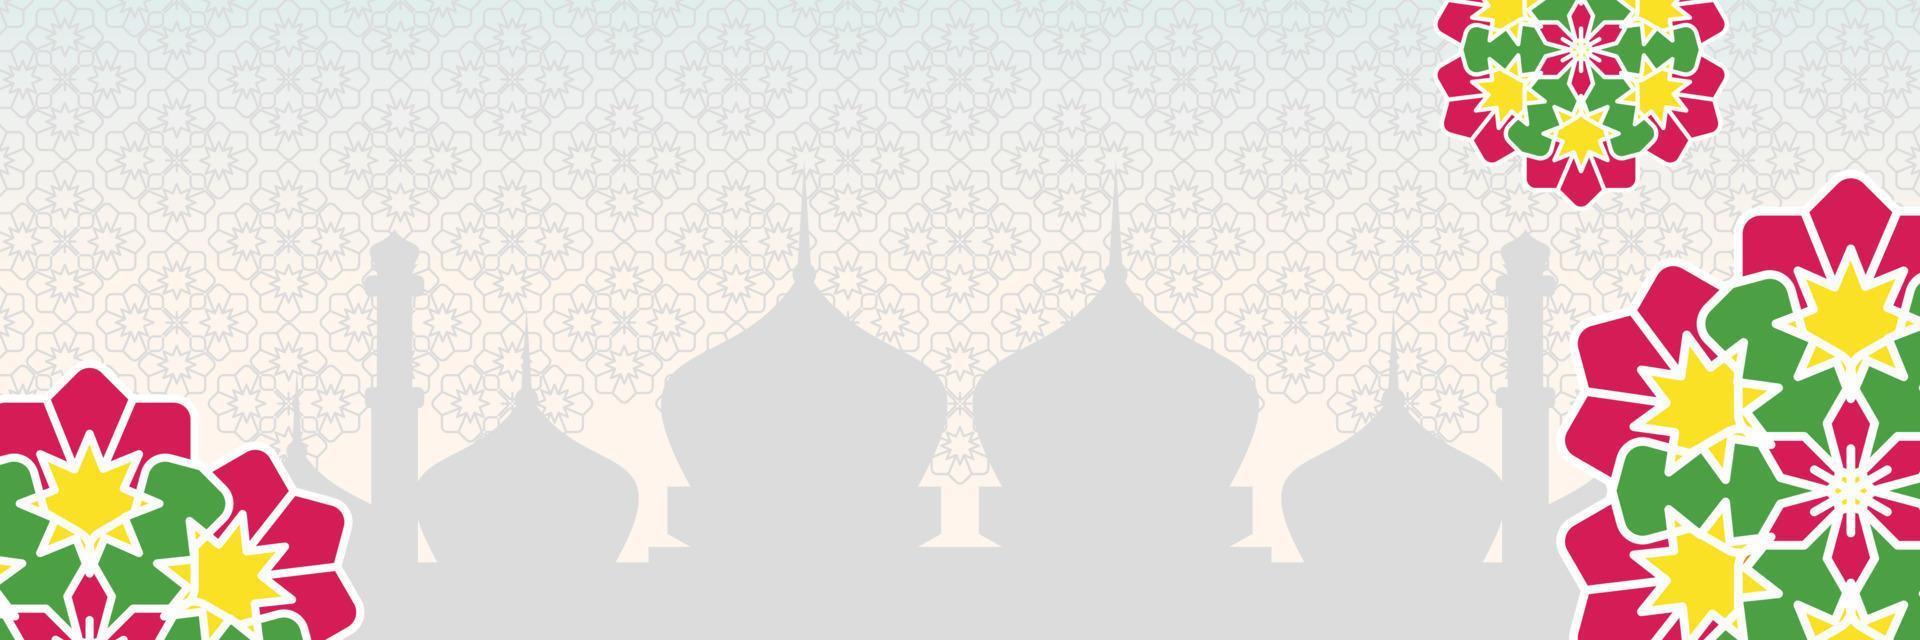 islamic bakgrund, med skön mandala prydnad. vektor mall för banderoller, hälsning kort för islamic högtider, eid al fitr, ramadhan, eid al Adha